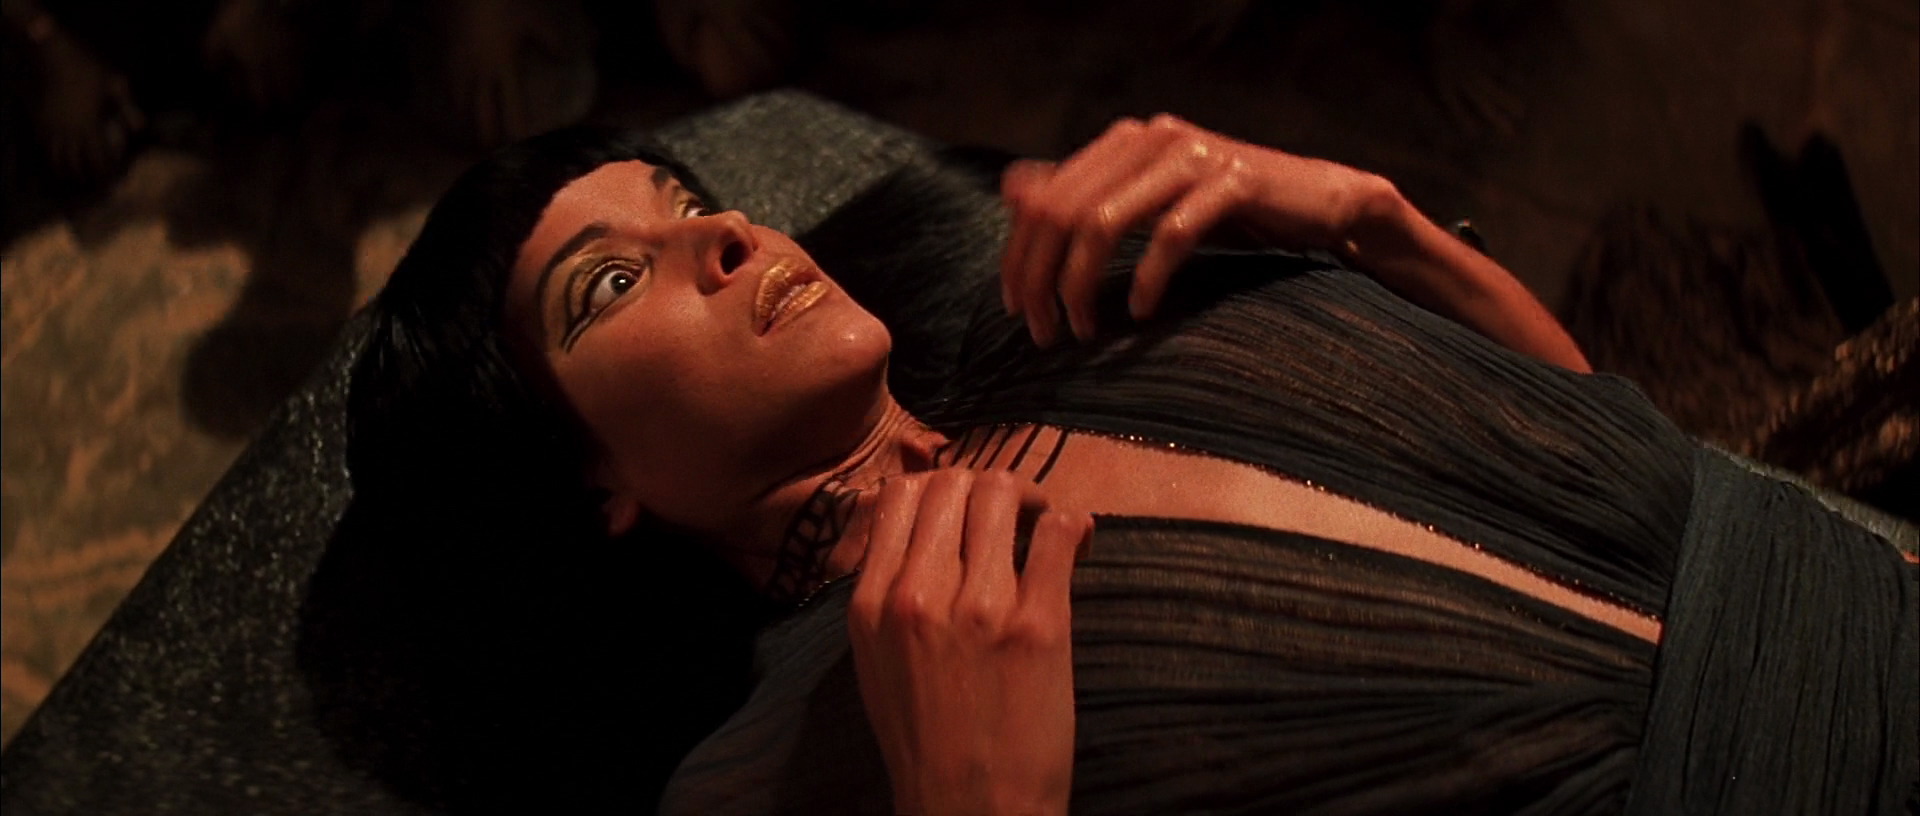 Patricia velasquez in the mummy